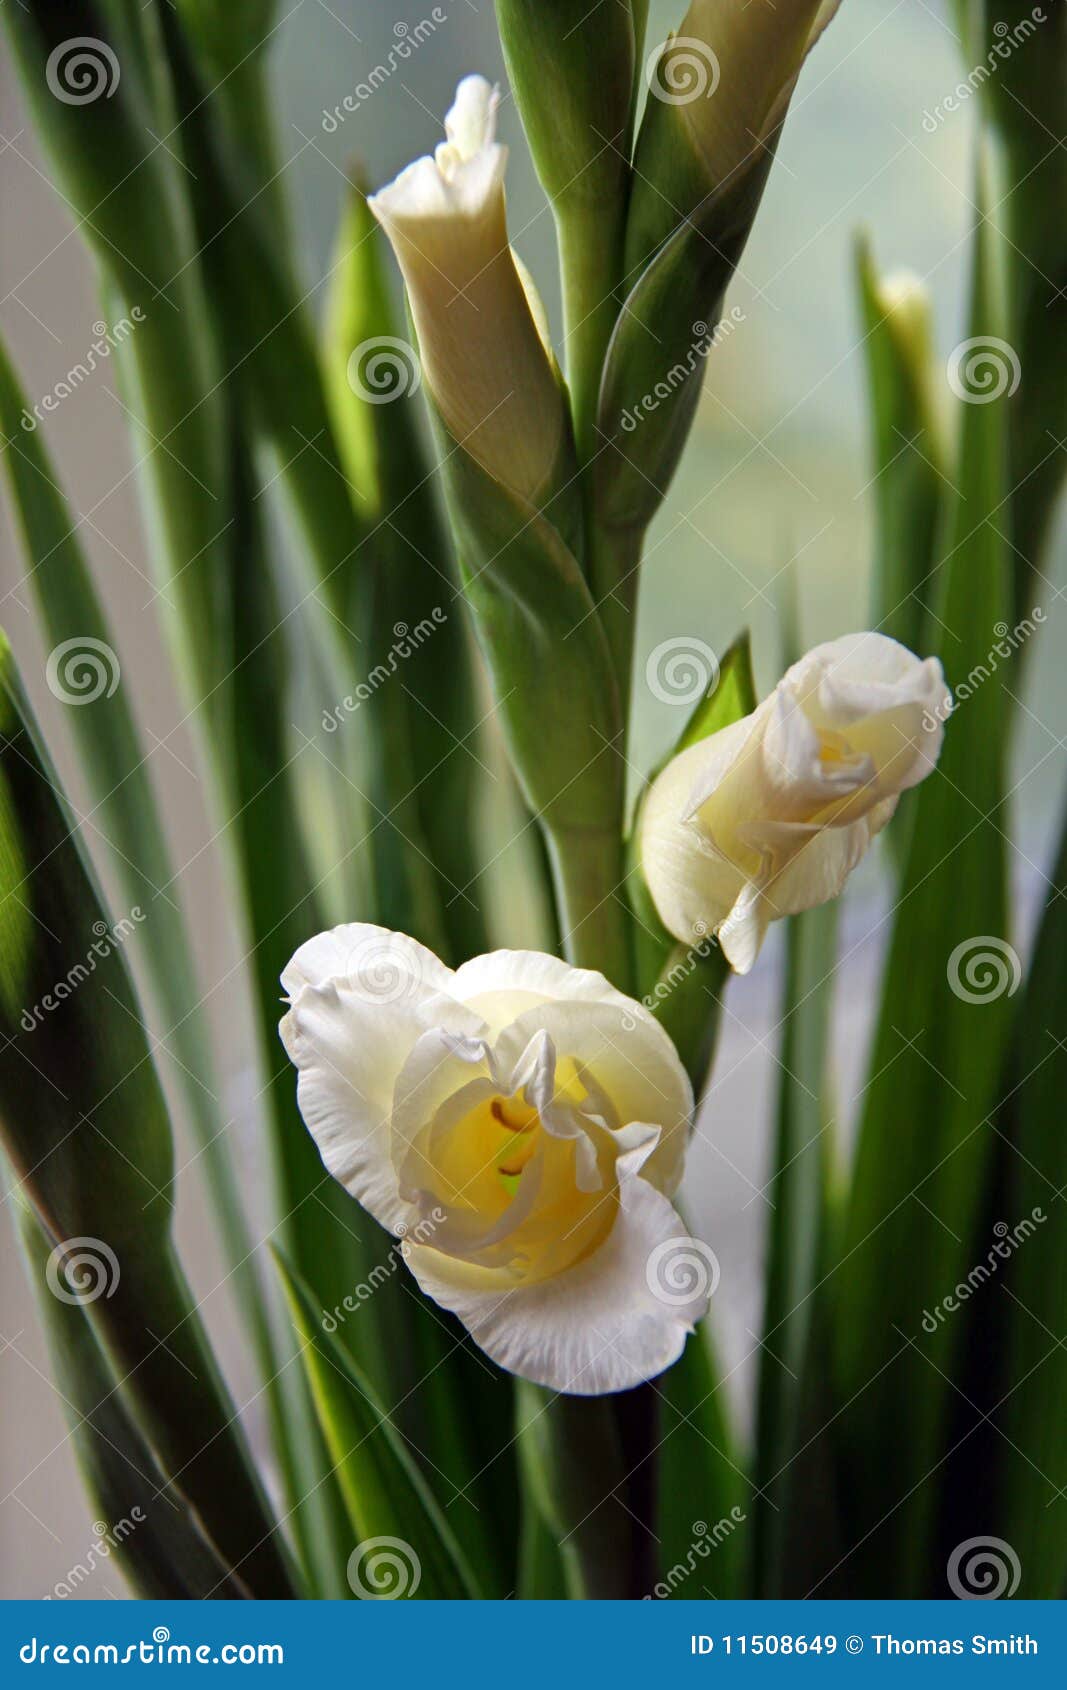 gladioli flowers